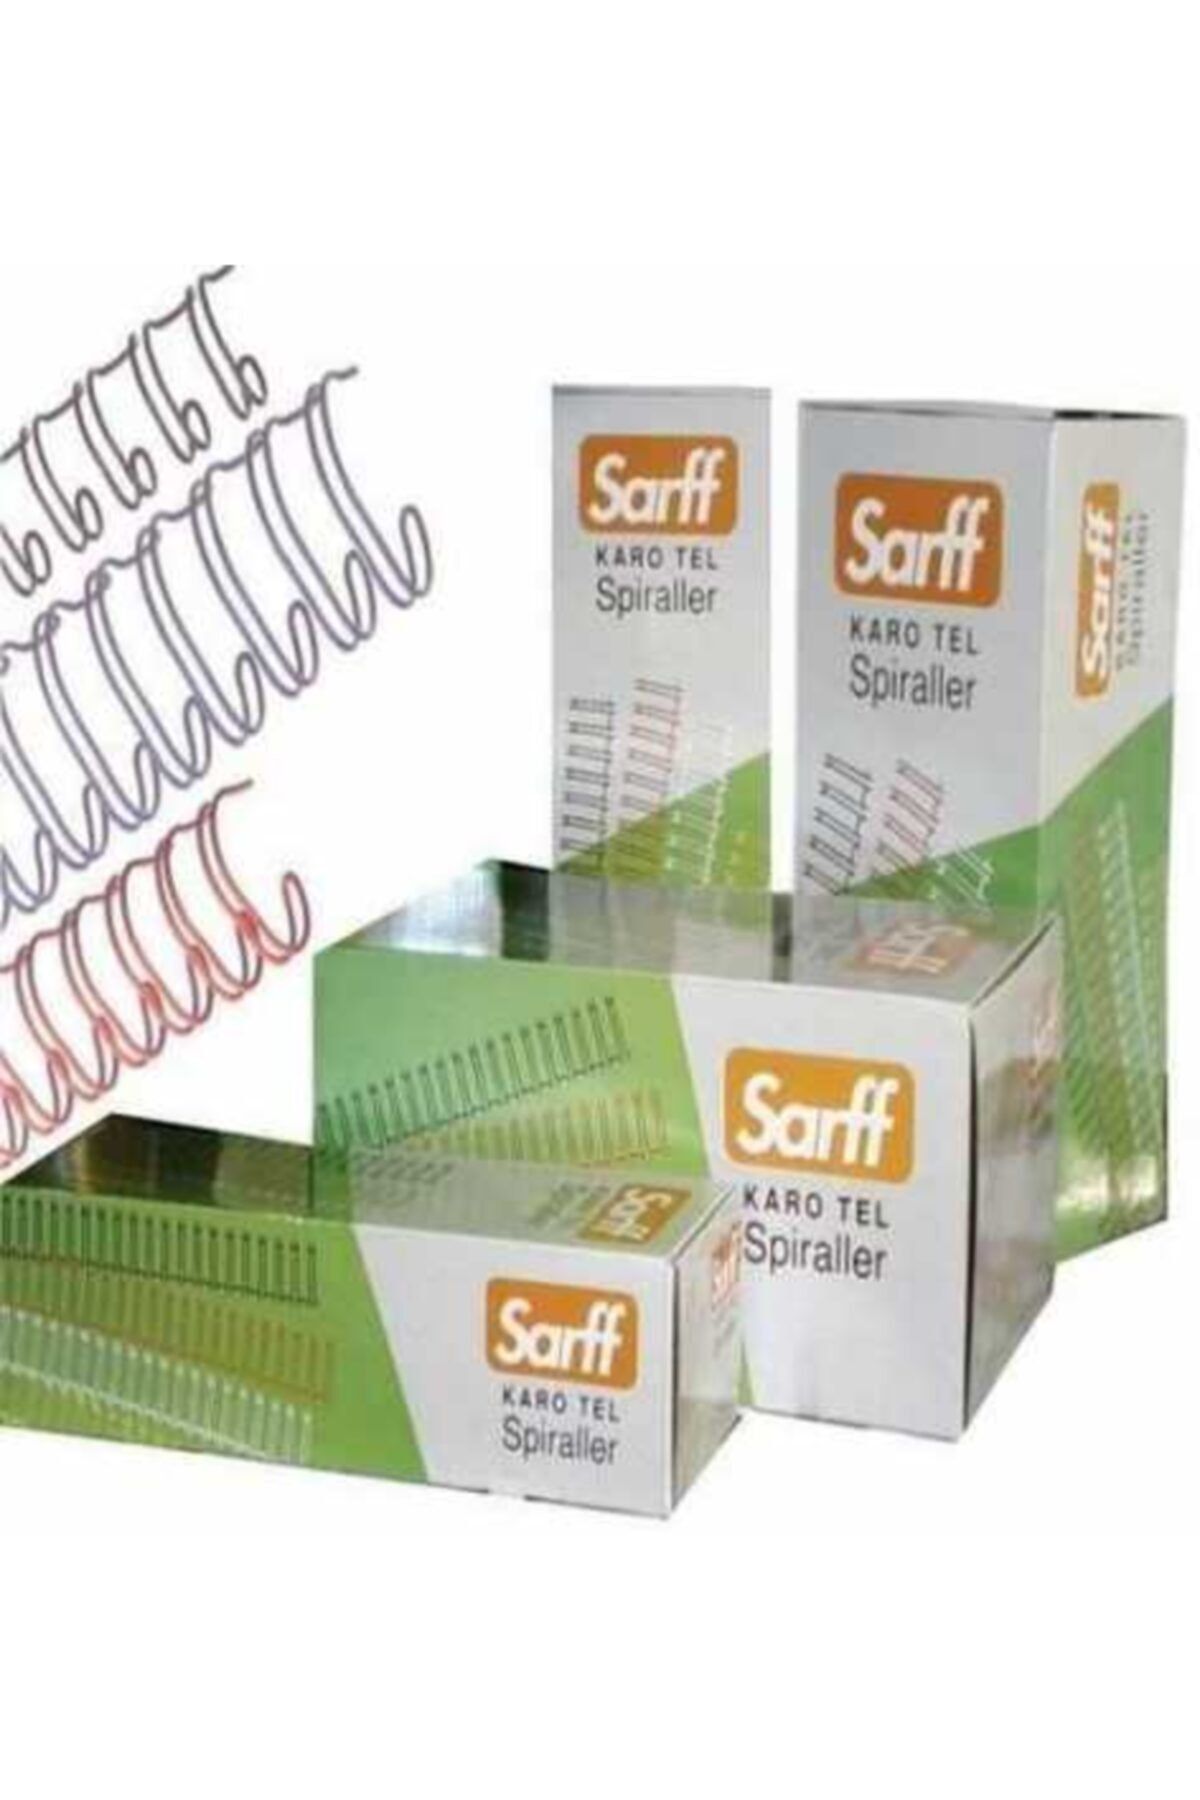 SARFF Tel Spiral Karo 1-4 Beyaz 100 Lü (1 Paket 100 Adet)